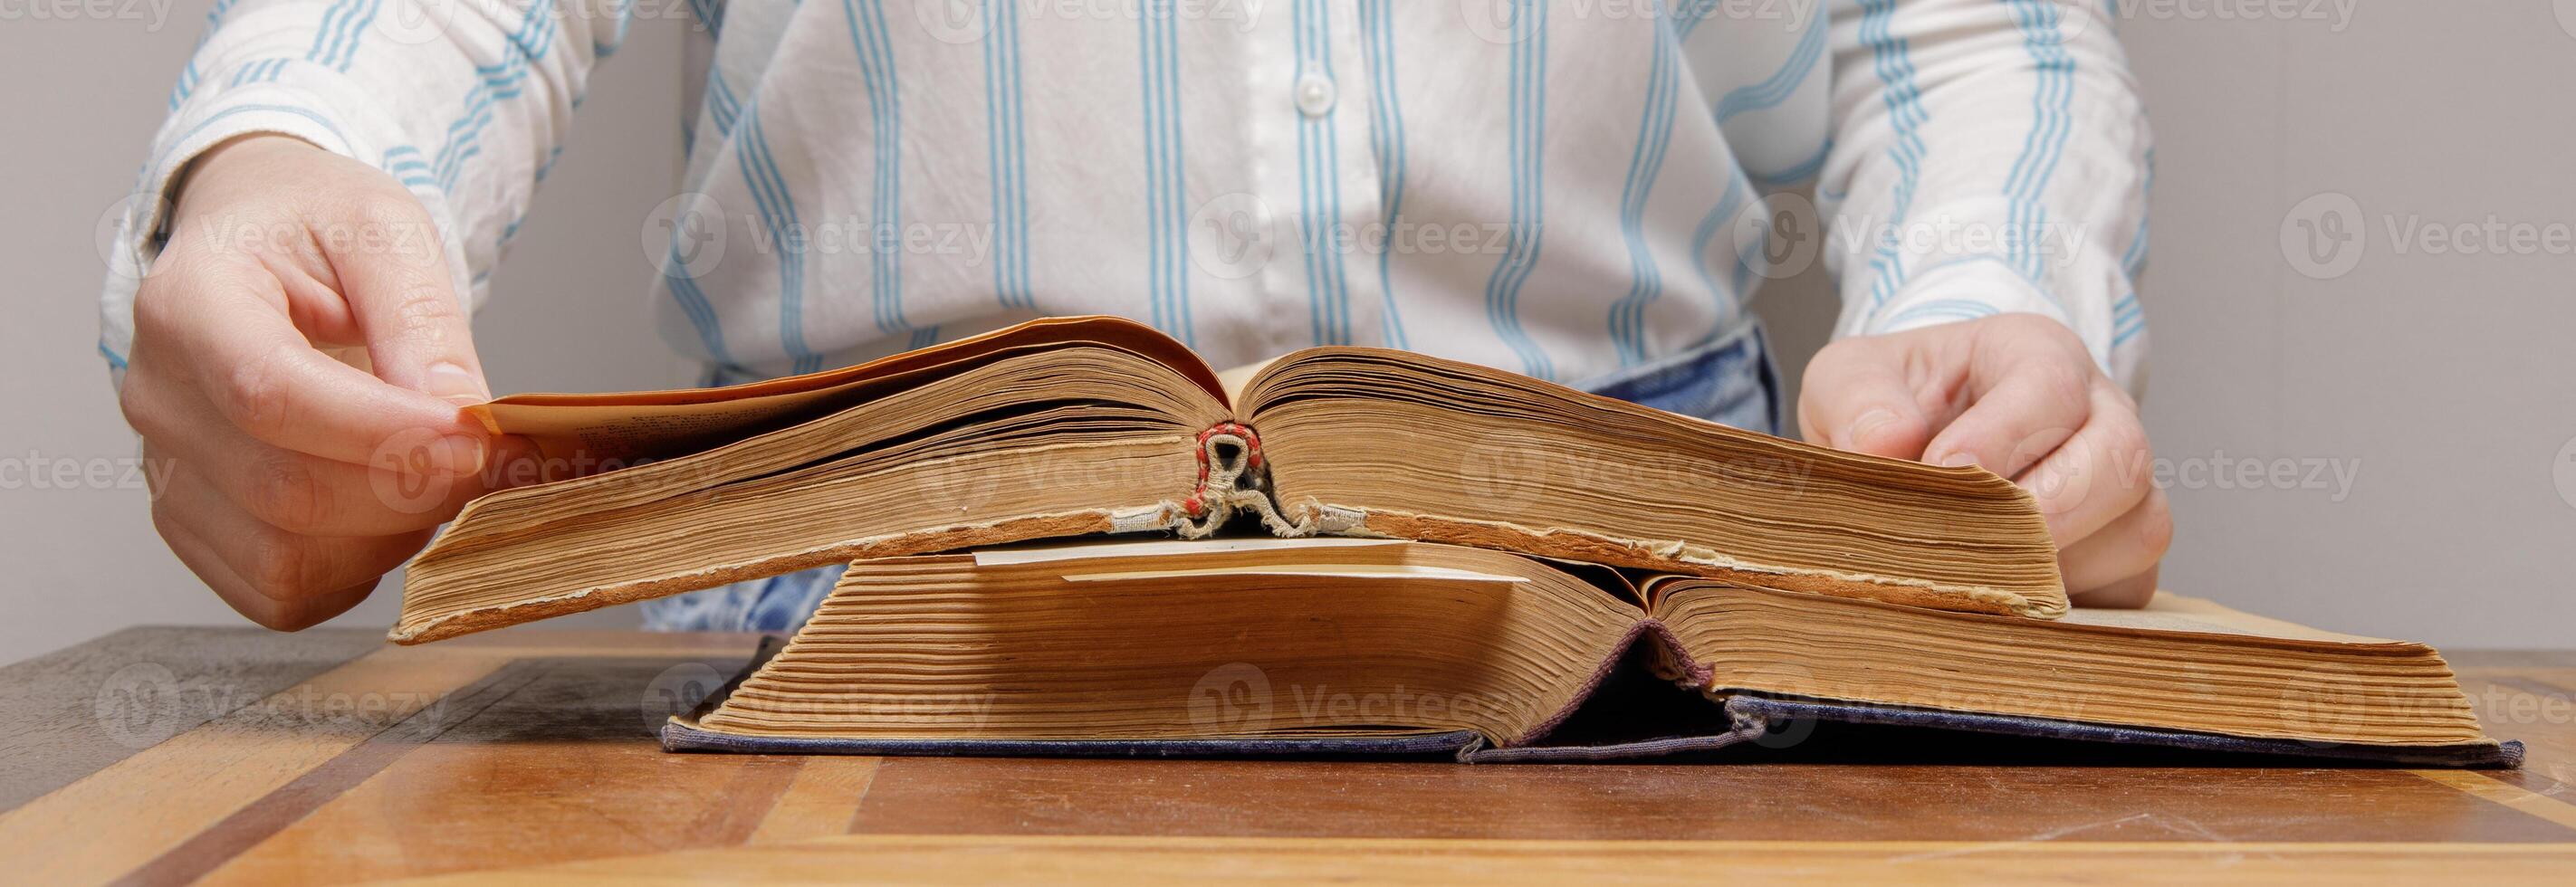 il mani di un invisibile persona foglia attraverso il pagine di un vecchio libro dire bugie su un' di legno tavolo nel un' Università o scuola biblioteca. foto